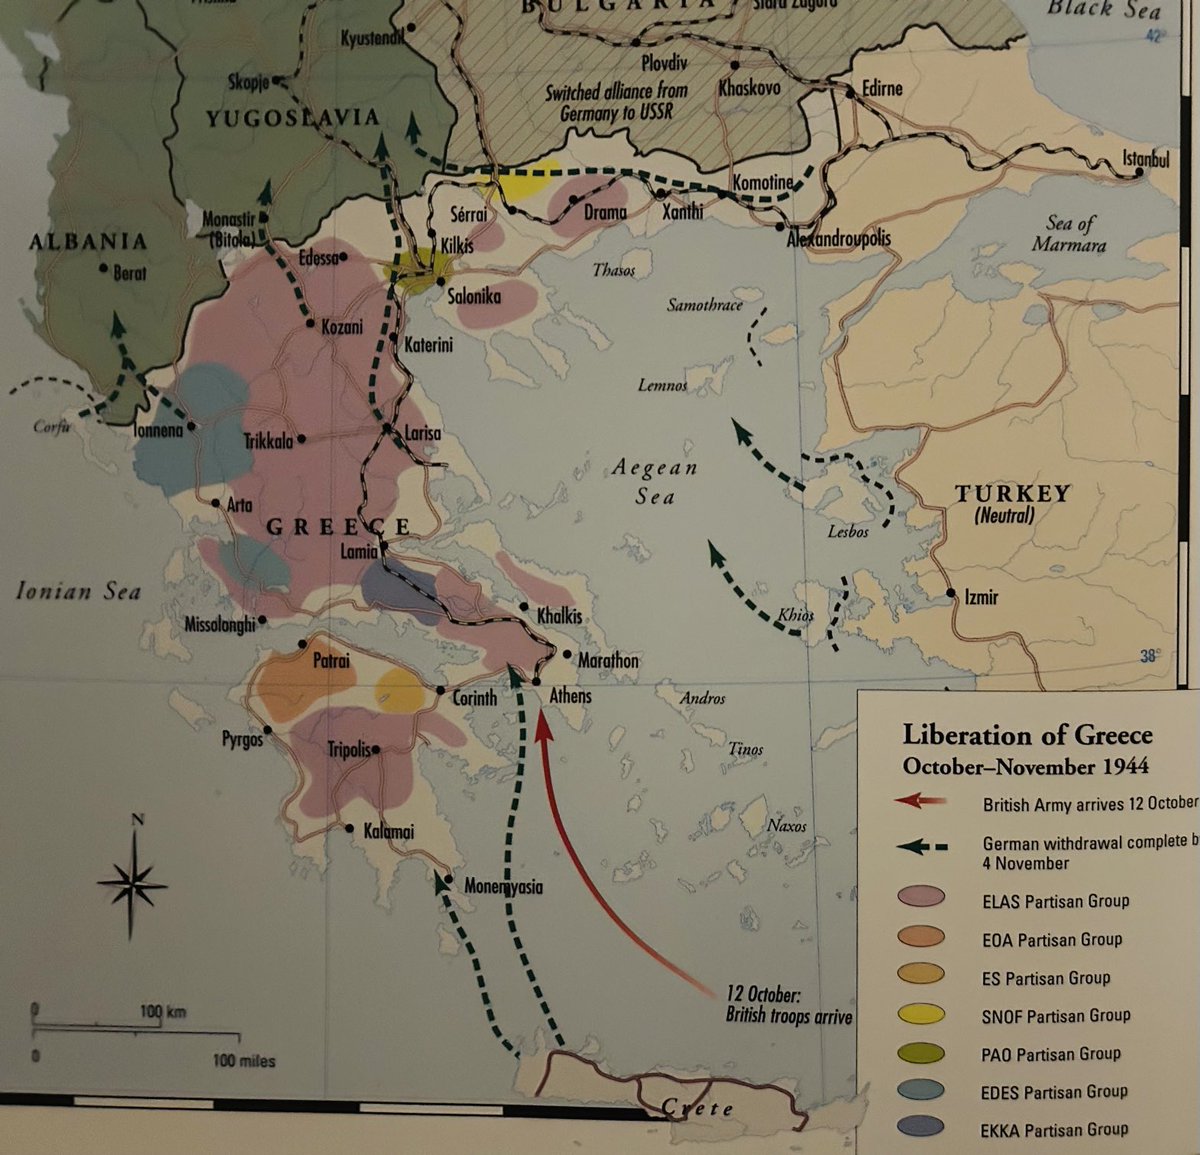 Ένας καταπληκτικός χάρτης (στα Αγγλικά) με τις περιοχές υπό τον έλεγχο των διαφορετικών αντιστασιακών ομάδων τον Νοέμβριο 1944 στην Ελλάδα. Πηγή: Atlas of World War II (Jordan David and Andrew West) #Ιστορία